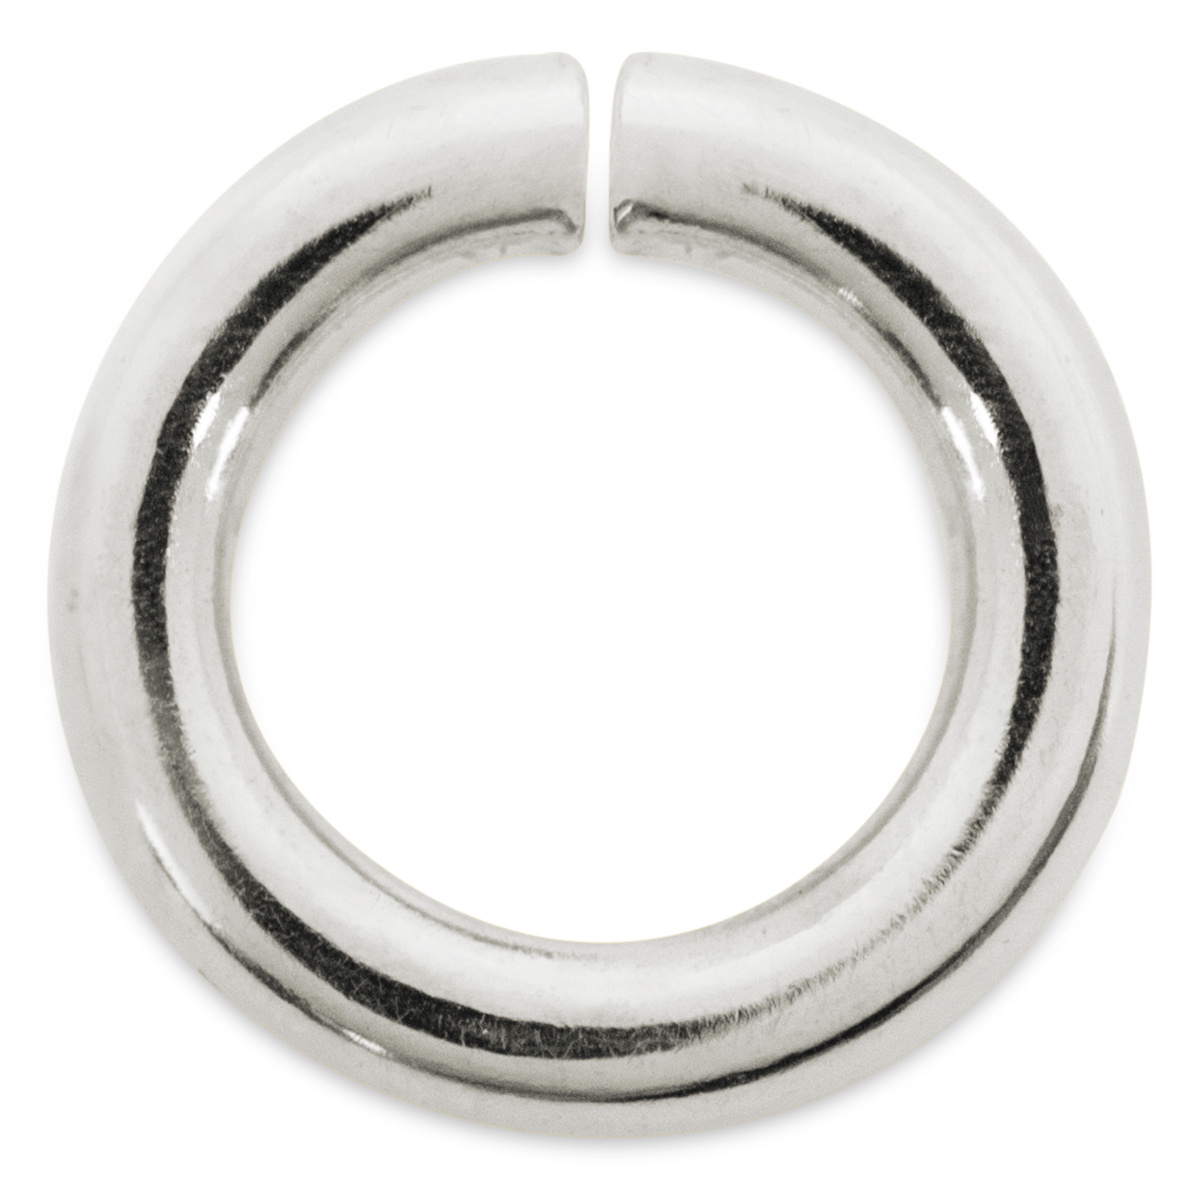 Binderinge, rund, 925/- Silber, Ø 5 mm, Stärke 1,1 mm